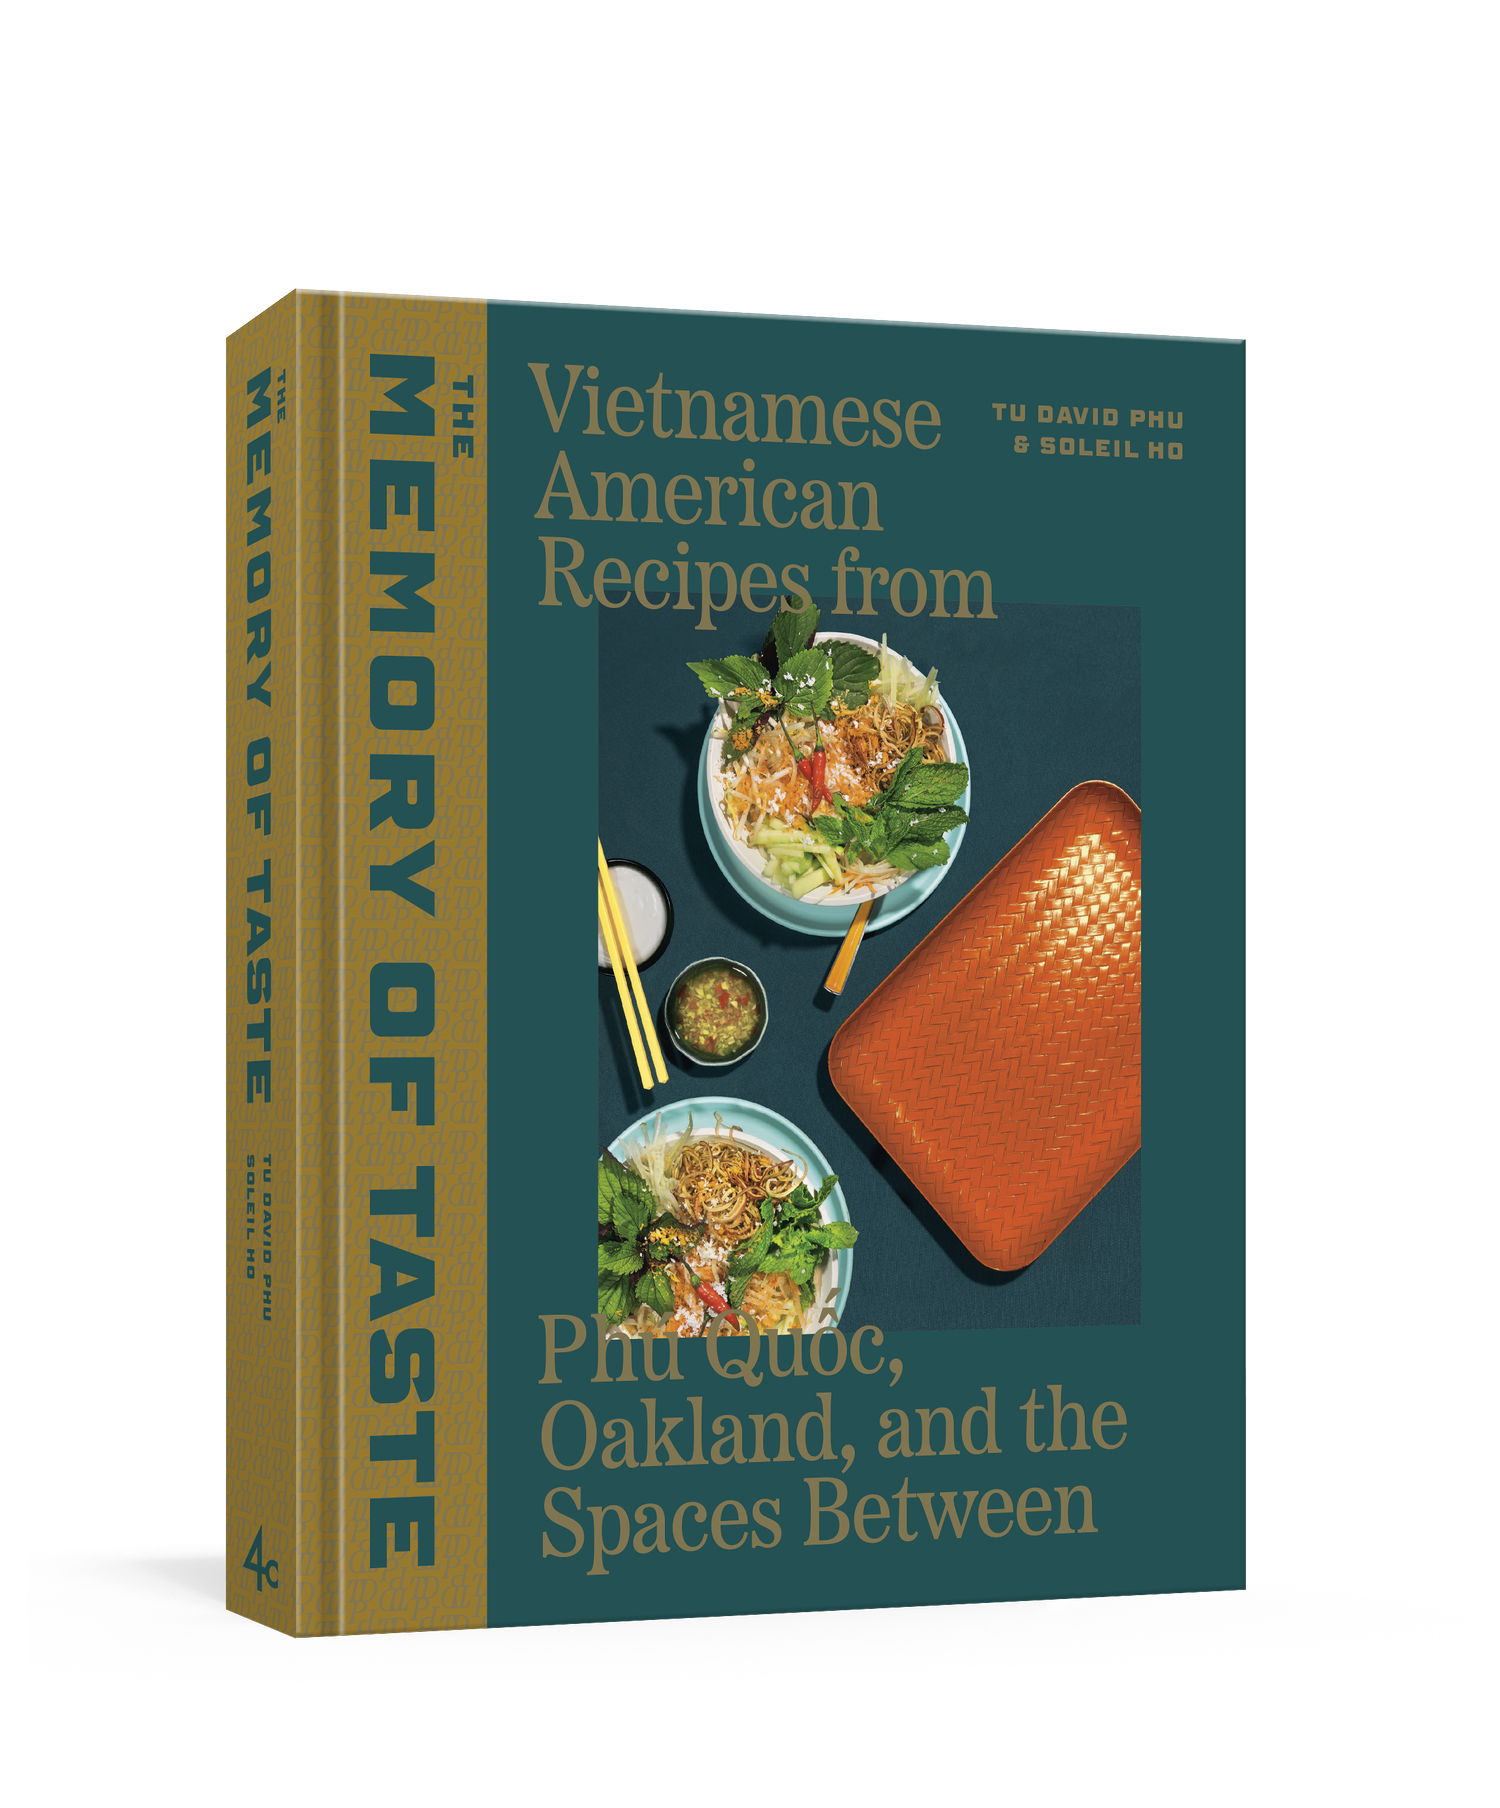 Cookbook — Chef Tu David Phu: Vietnamese American Diaspora Cuisine